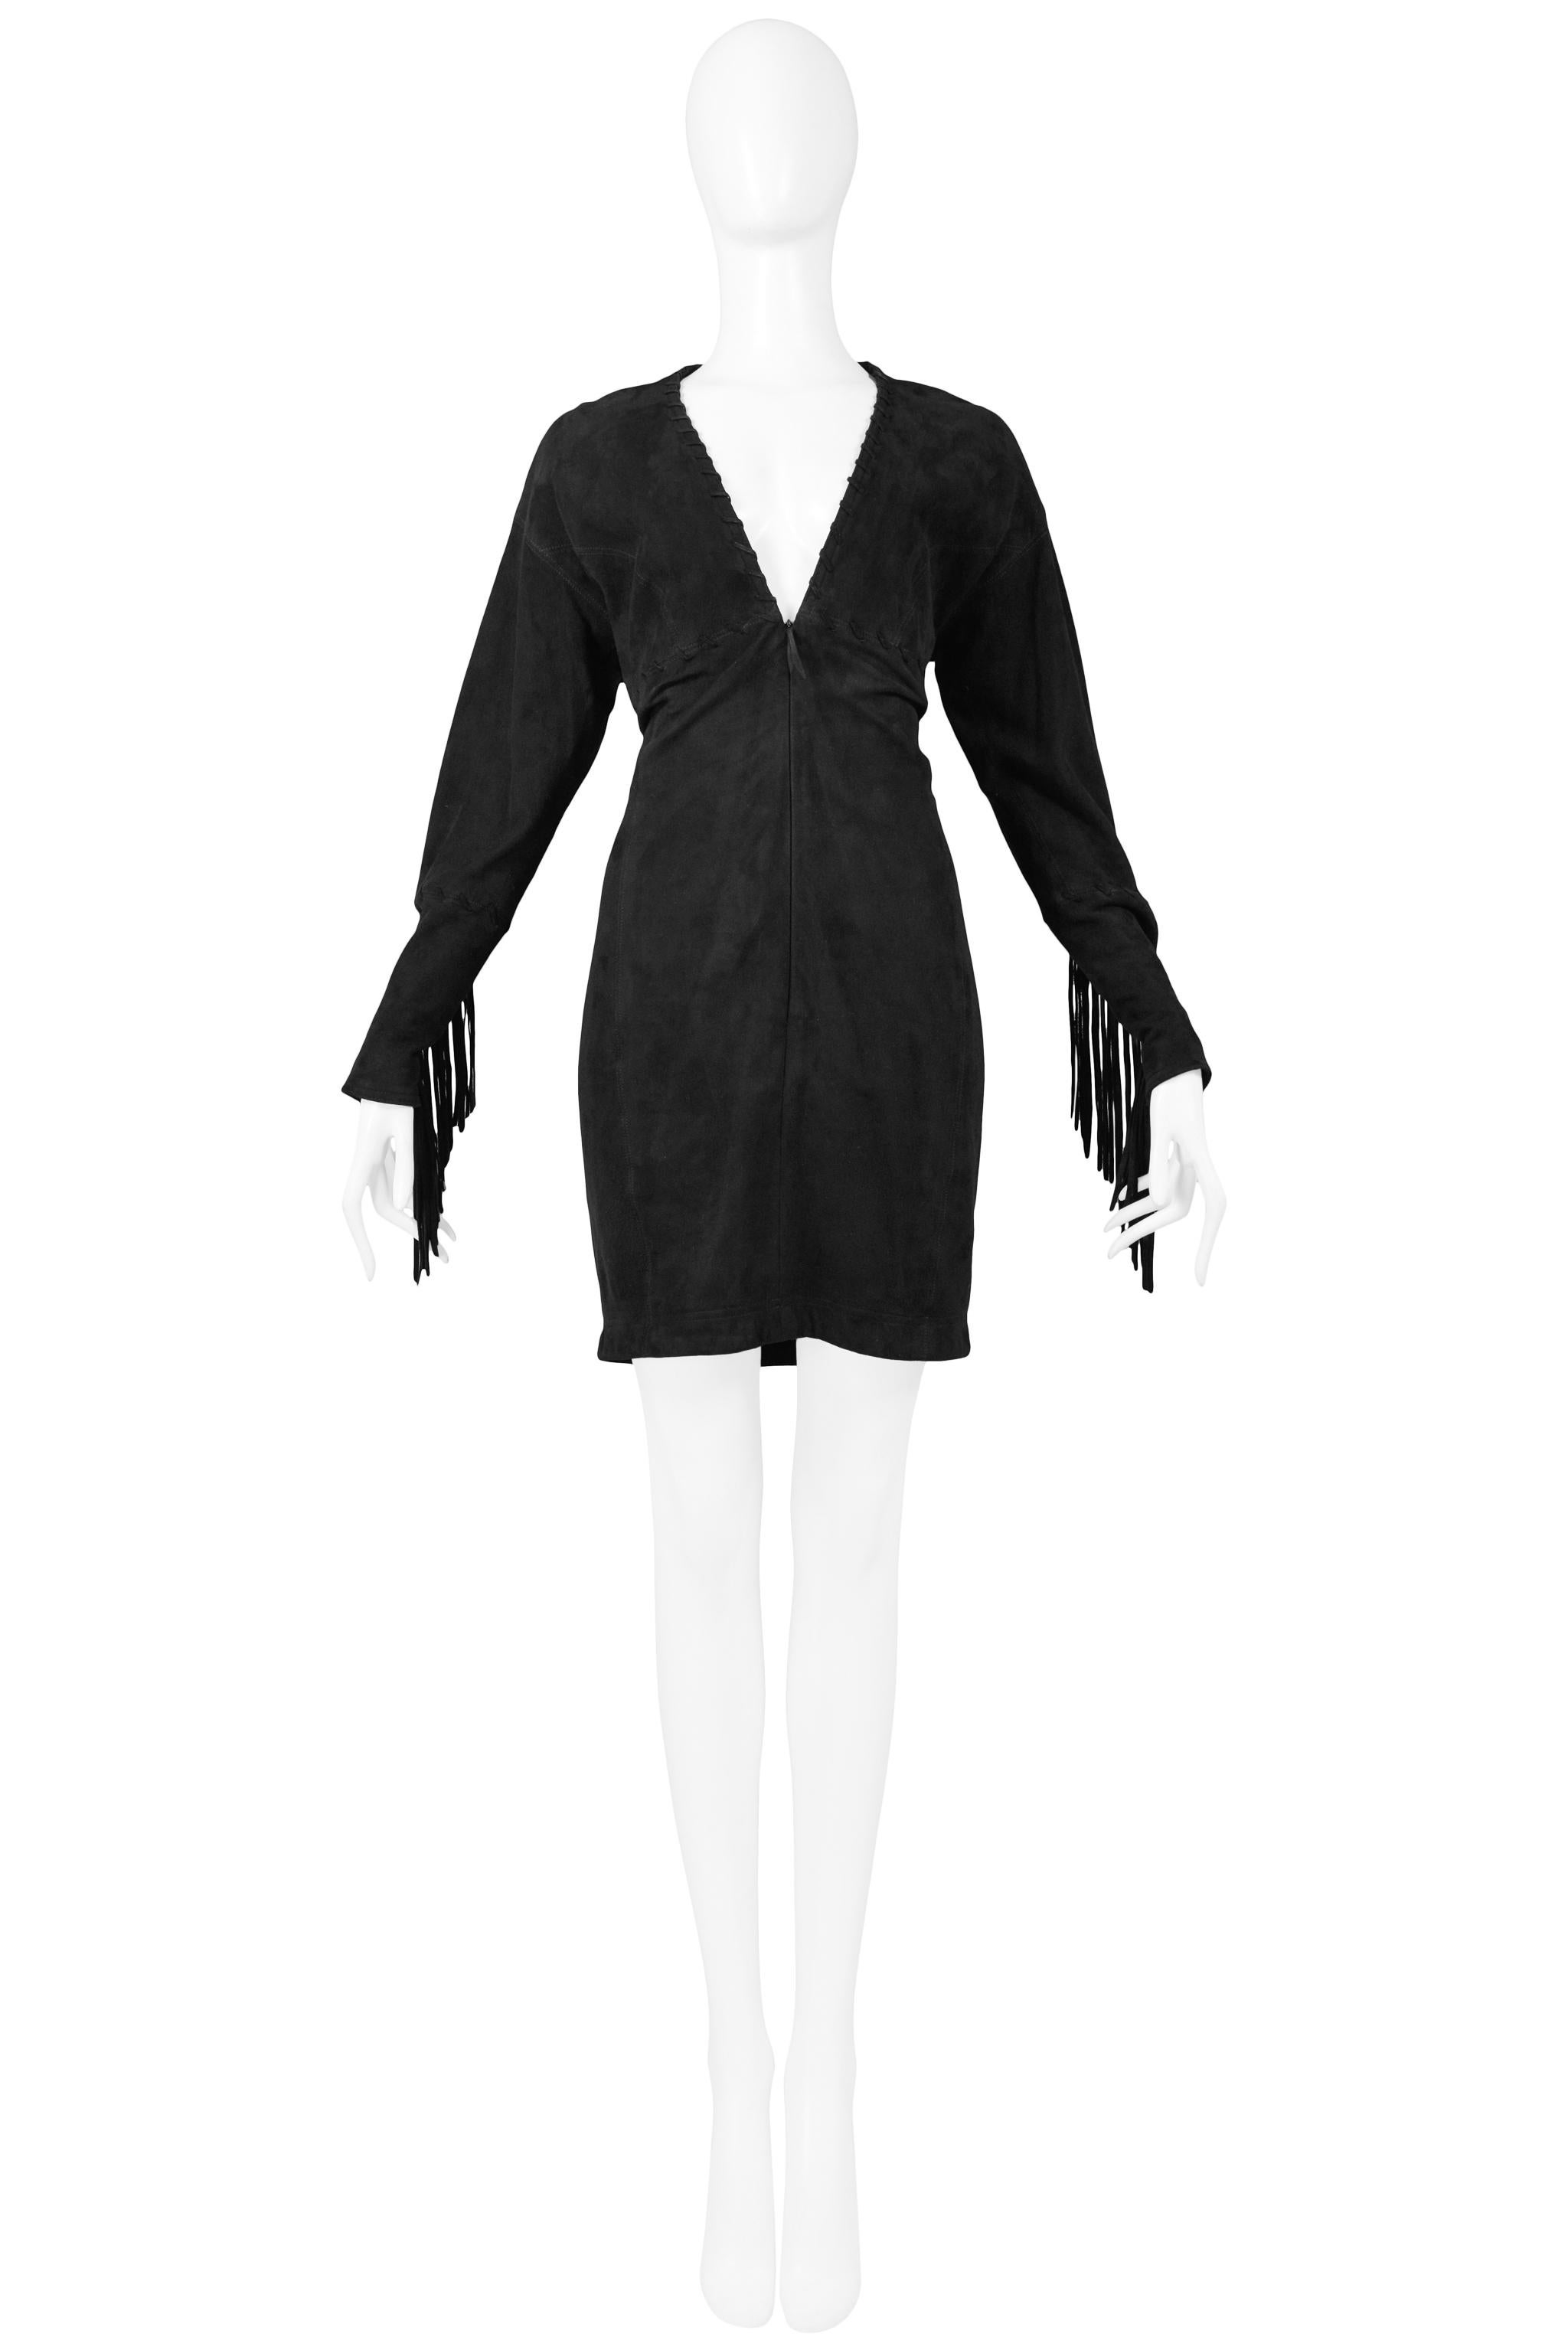 Resurrection a le plaisir de vous proposer cette mini robe vintage Isaac Mizrahi en daim noir à manches longues, avec une profonde encolure en V, des surpiqûres et une fermeture éclair sur le devant. Détail de frange le long du bas de la manche.